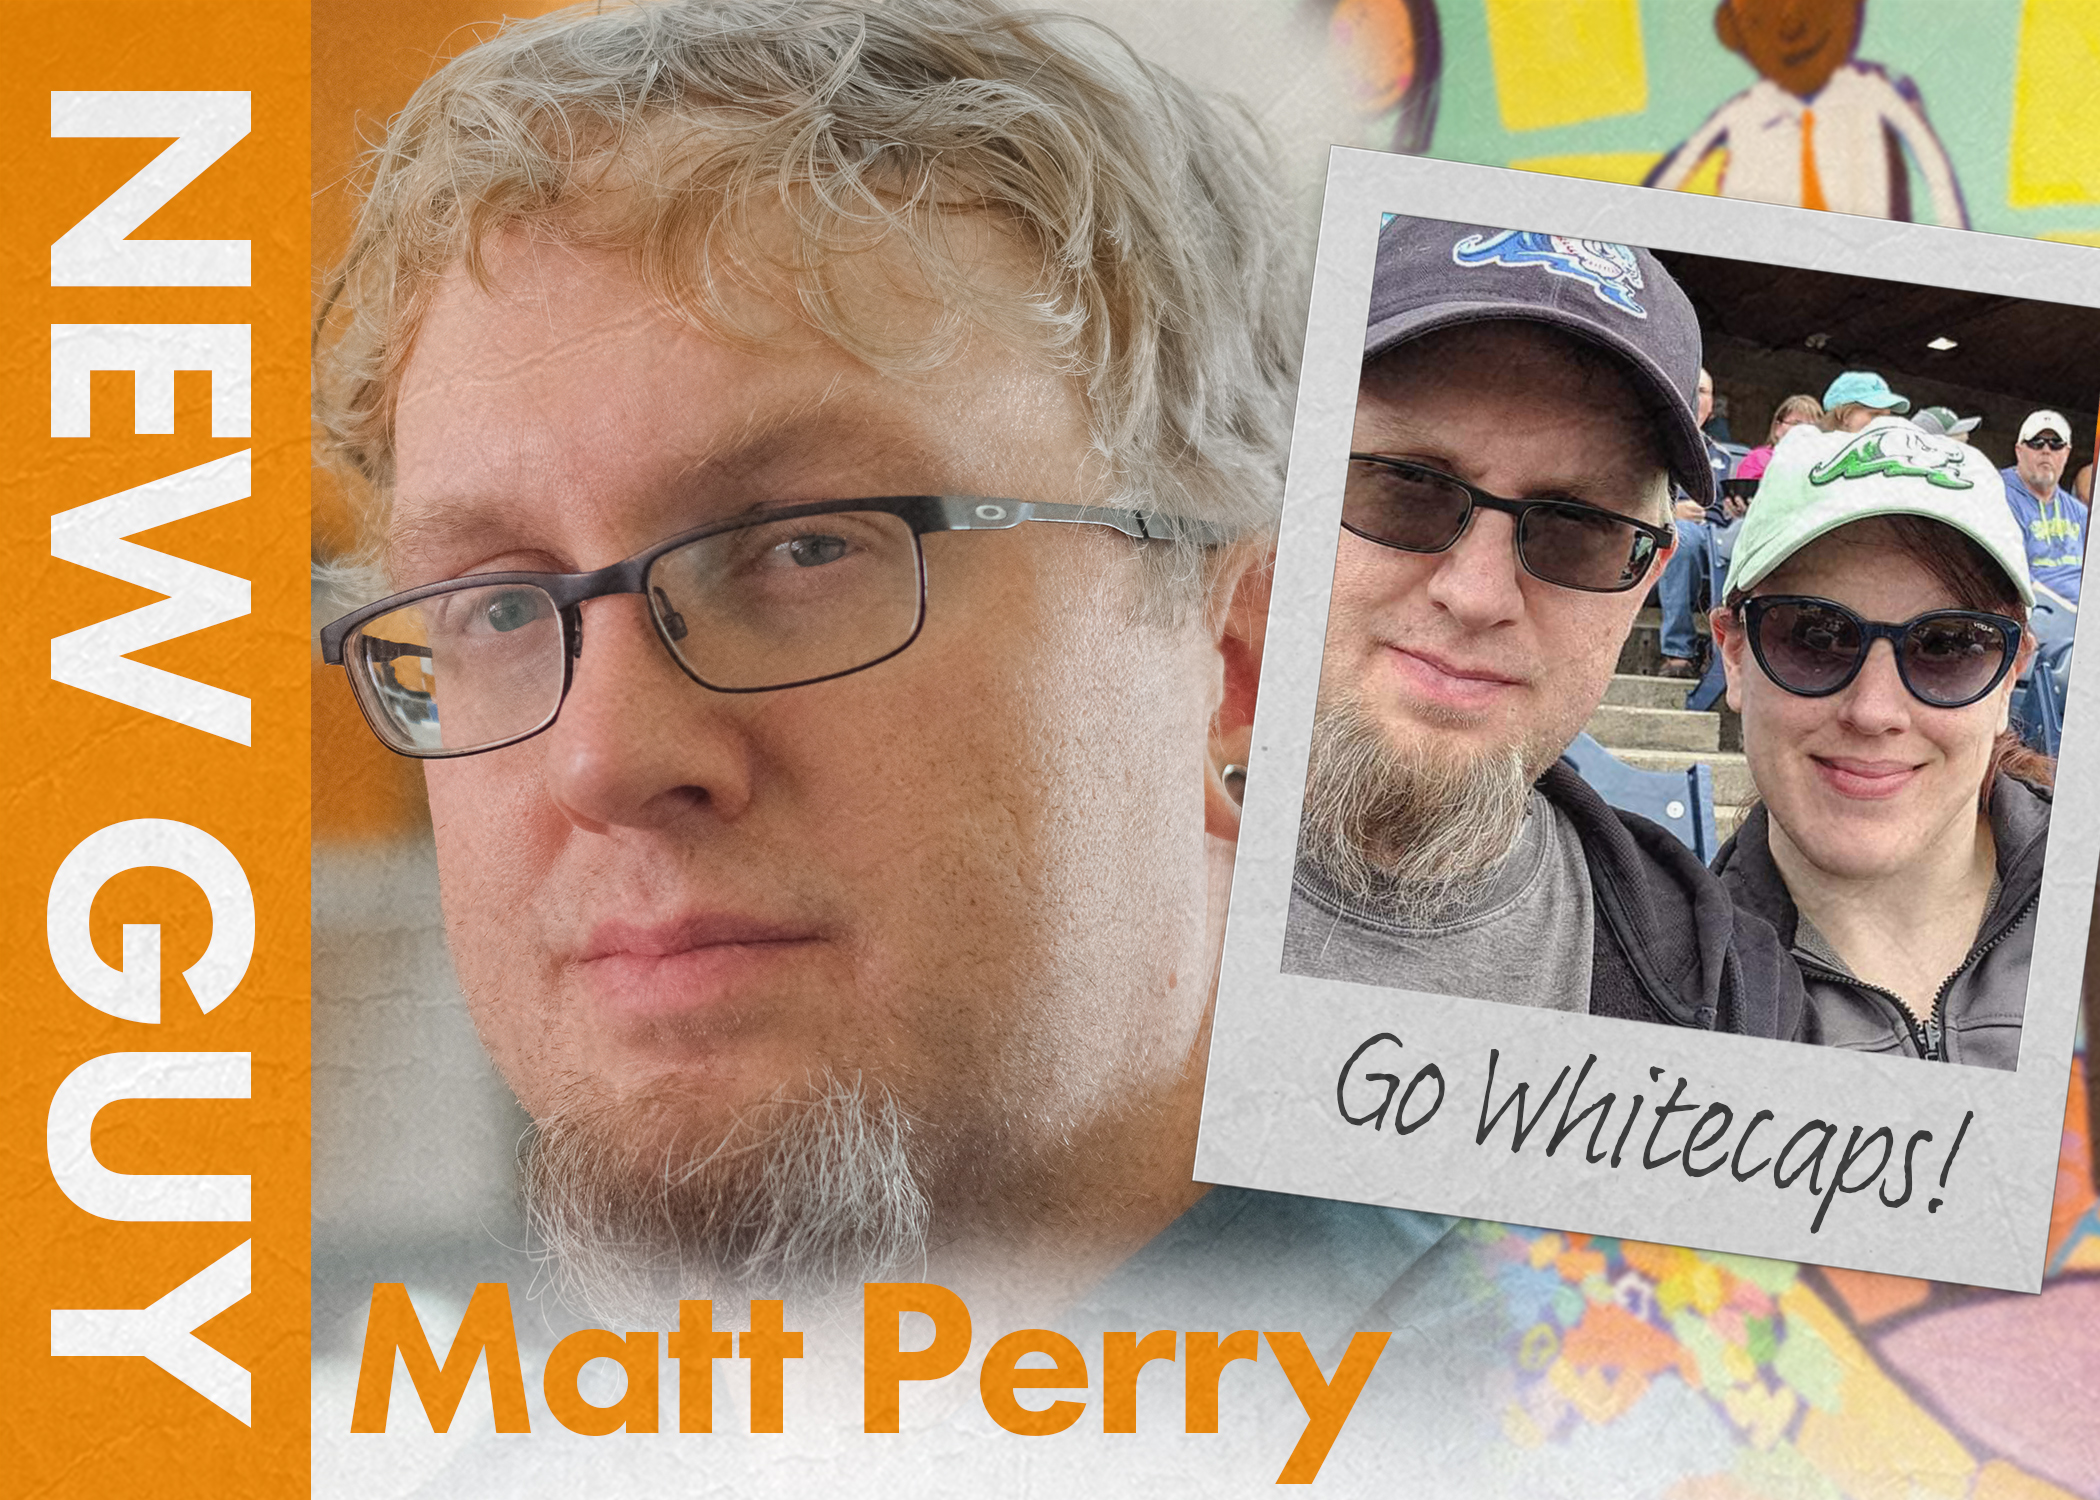 Matt Perry - new hire